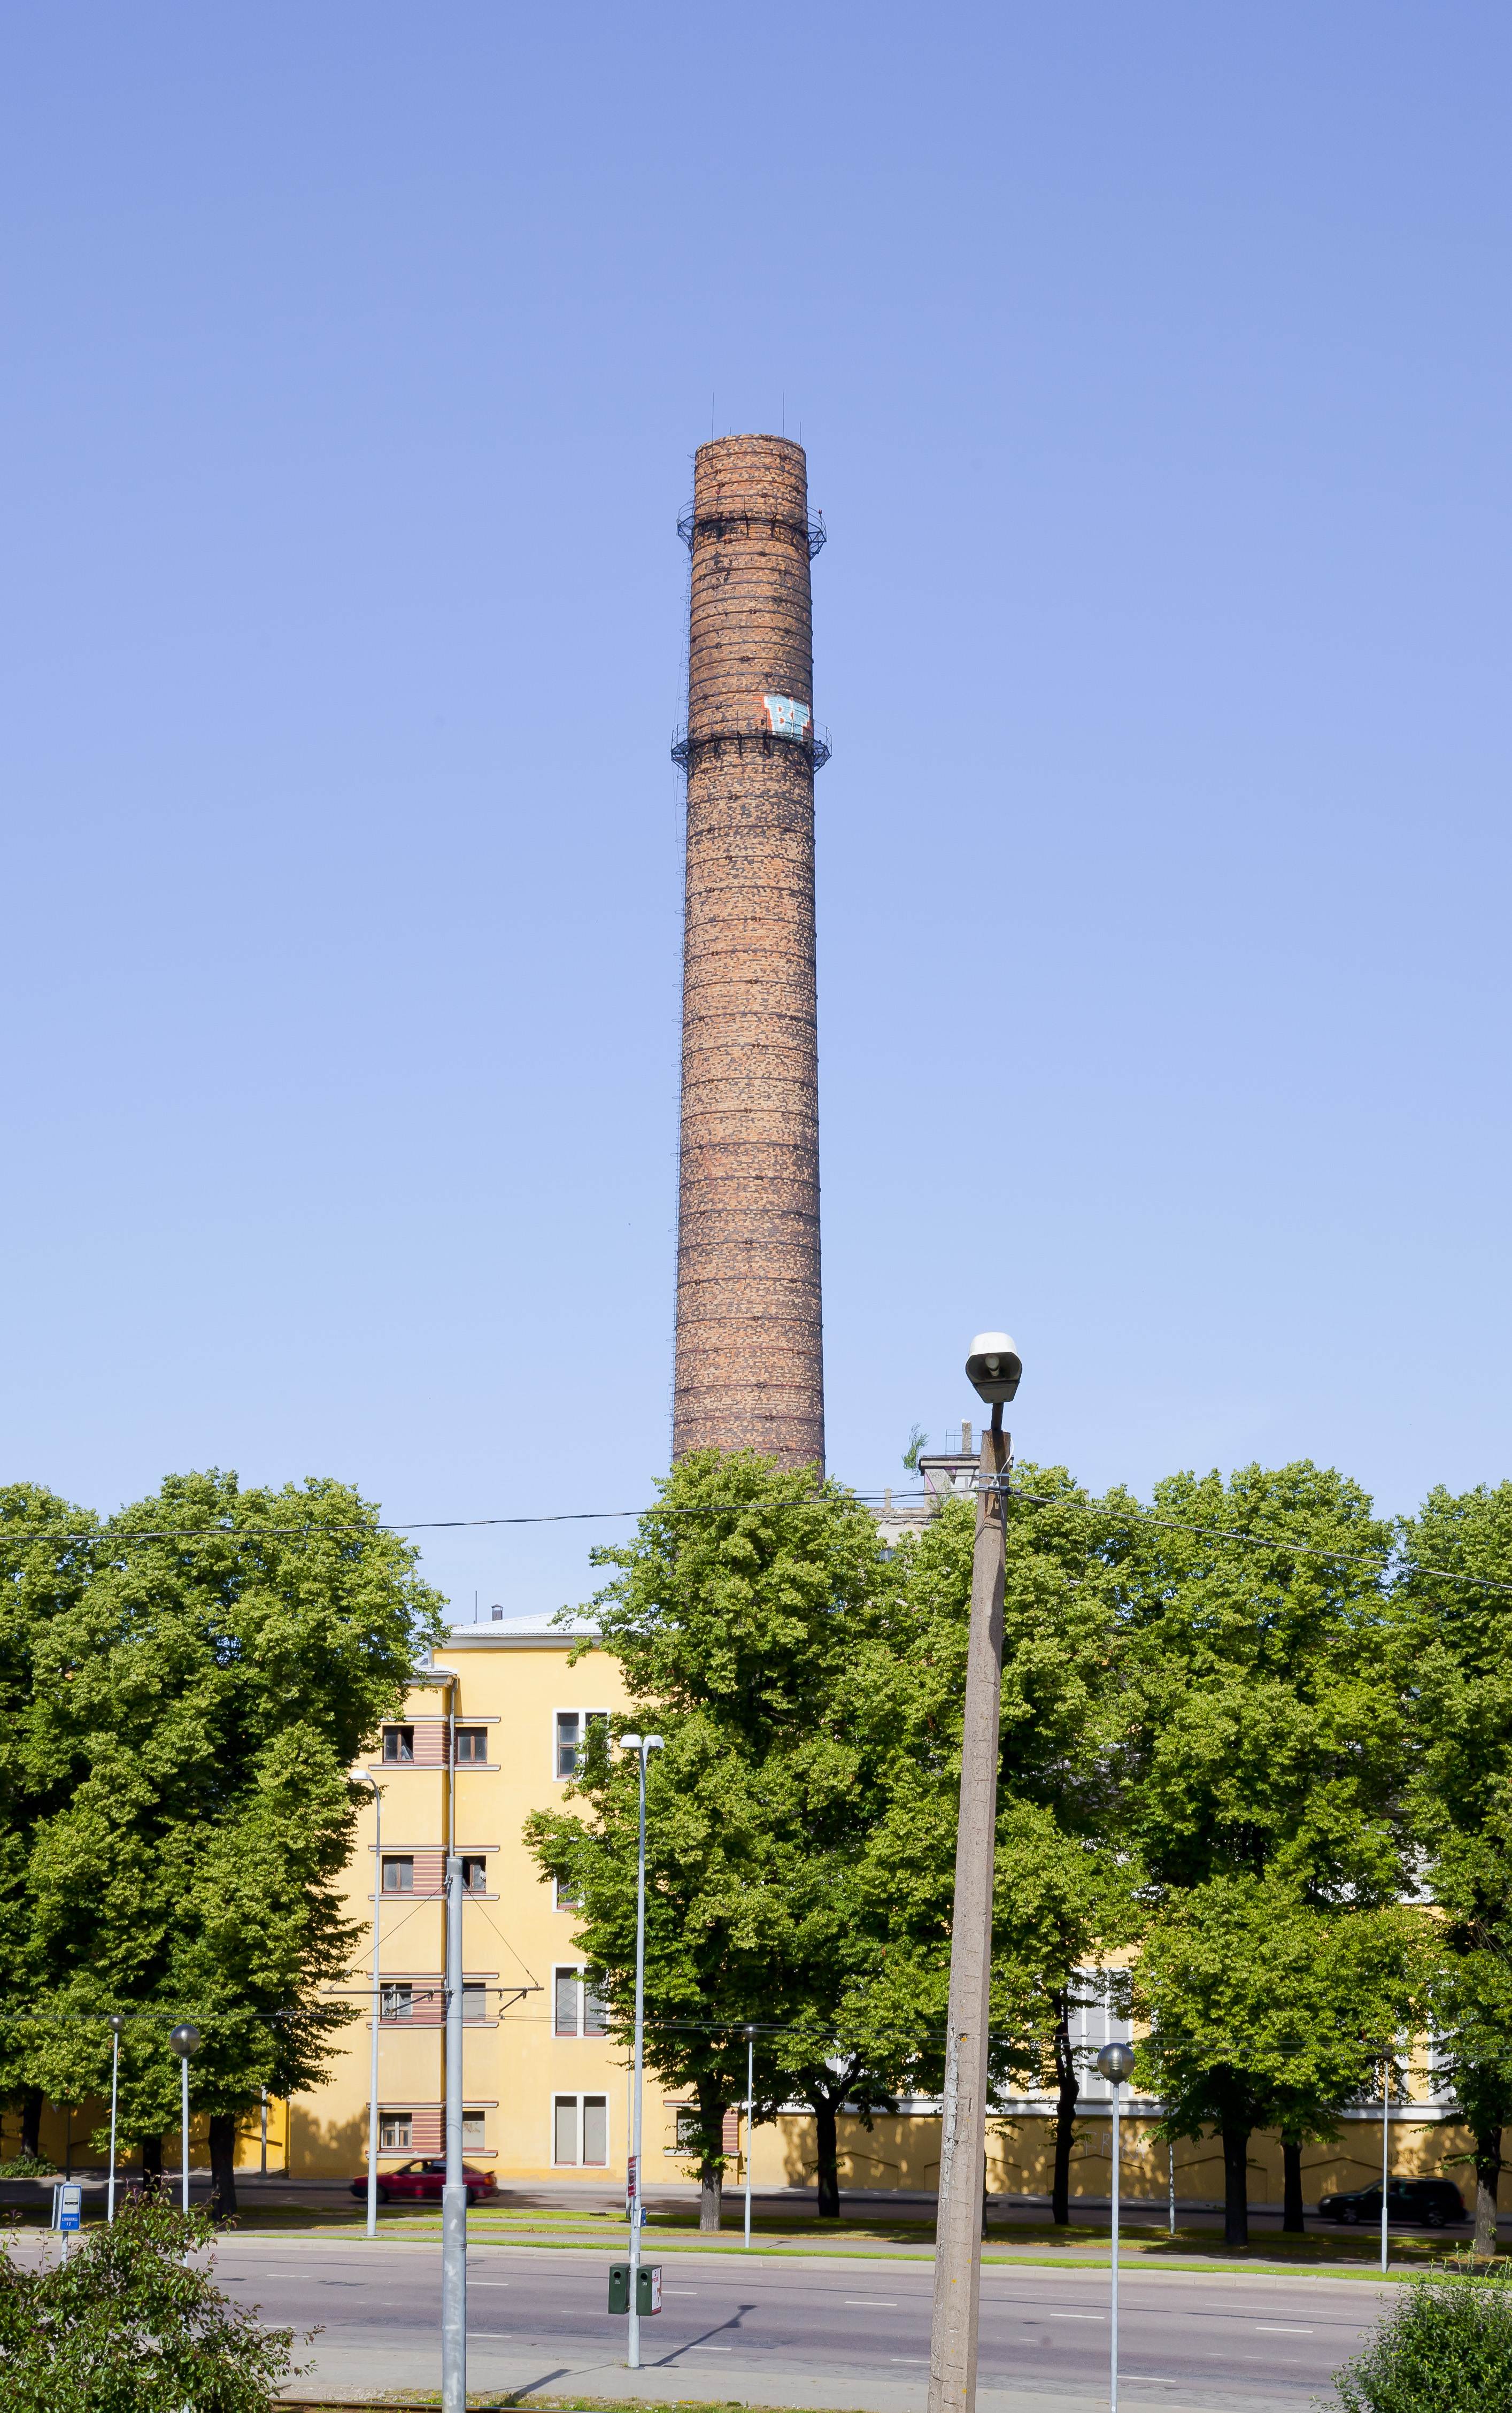 Chimenea de la central eléctrica de Tallin, Estonia, 2012-08-05, DD 01